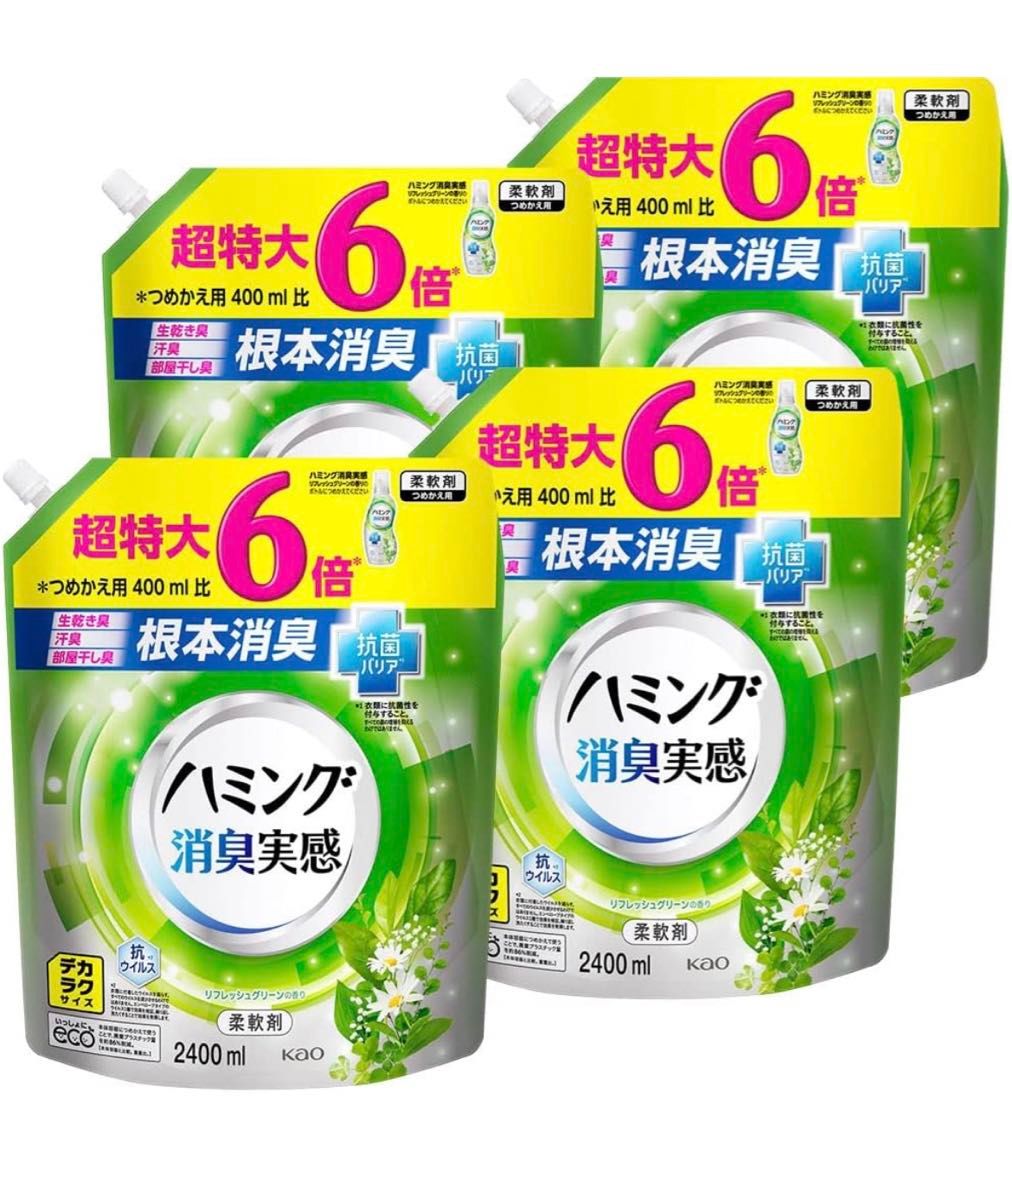 【4袋セット】ハミング消臭実感 柔軟剤 根本消臭+抗菌バリア リフレッシュグリーンの香り 詰替え用 2400ml 